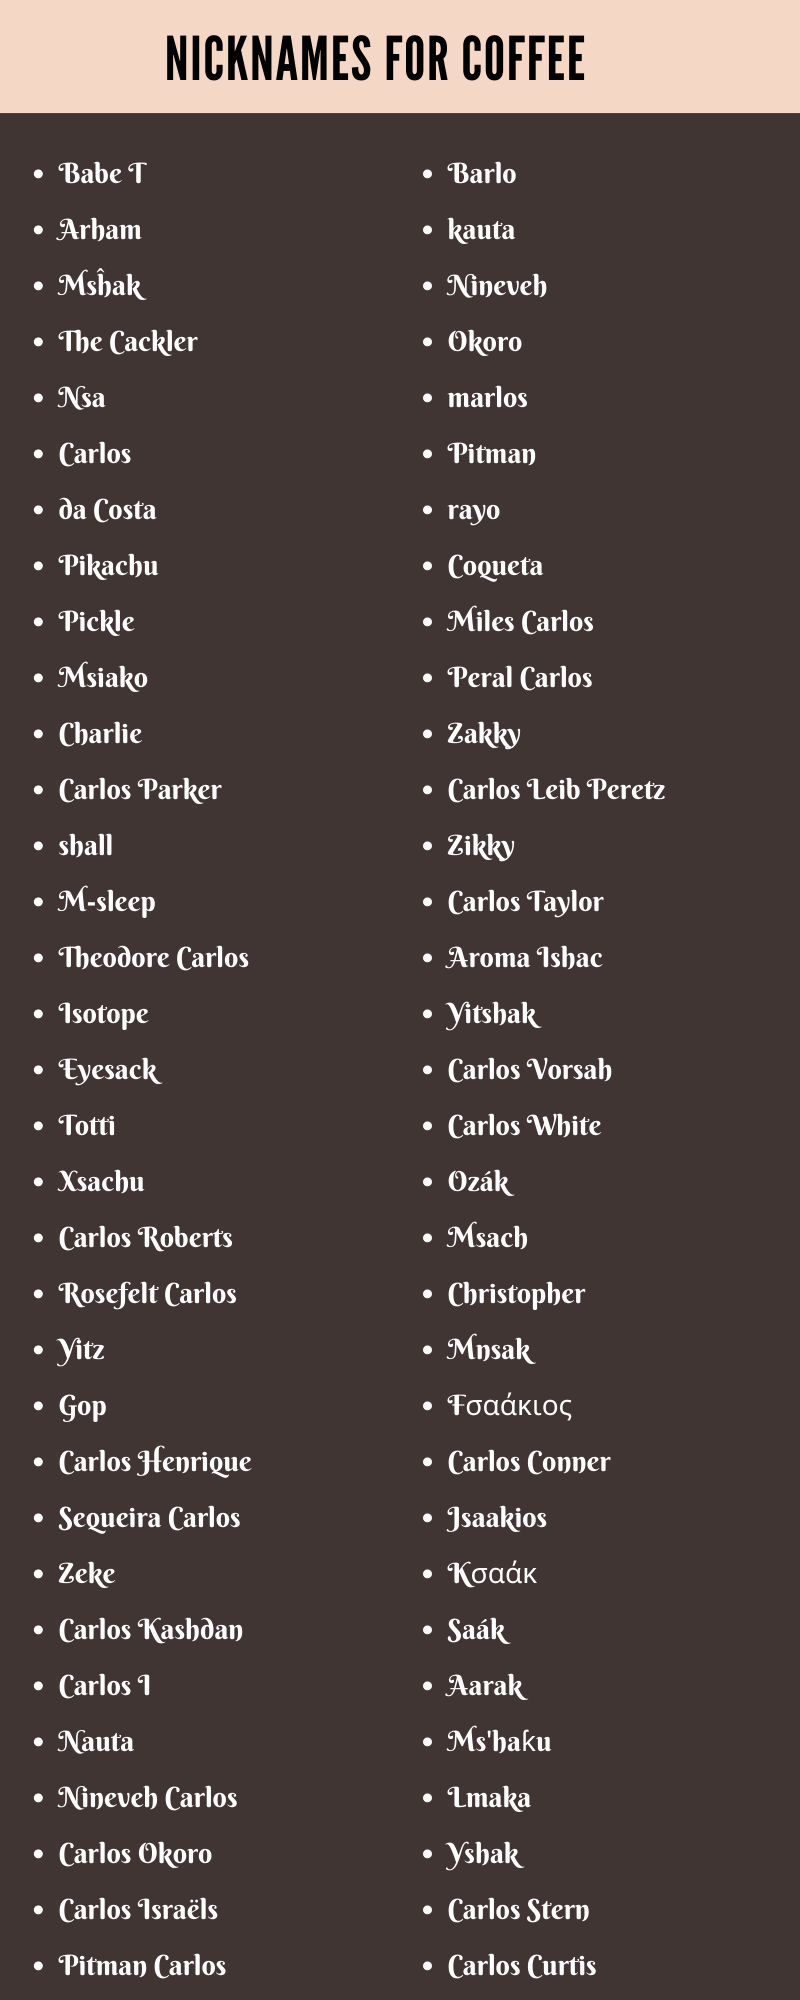 Nicknames for Coffee